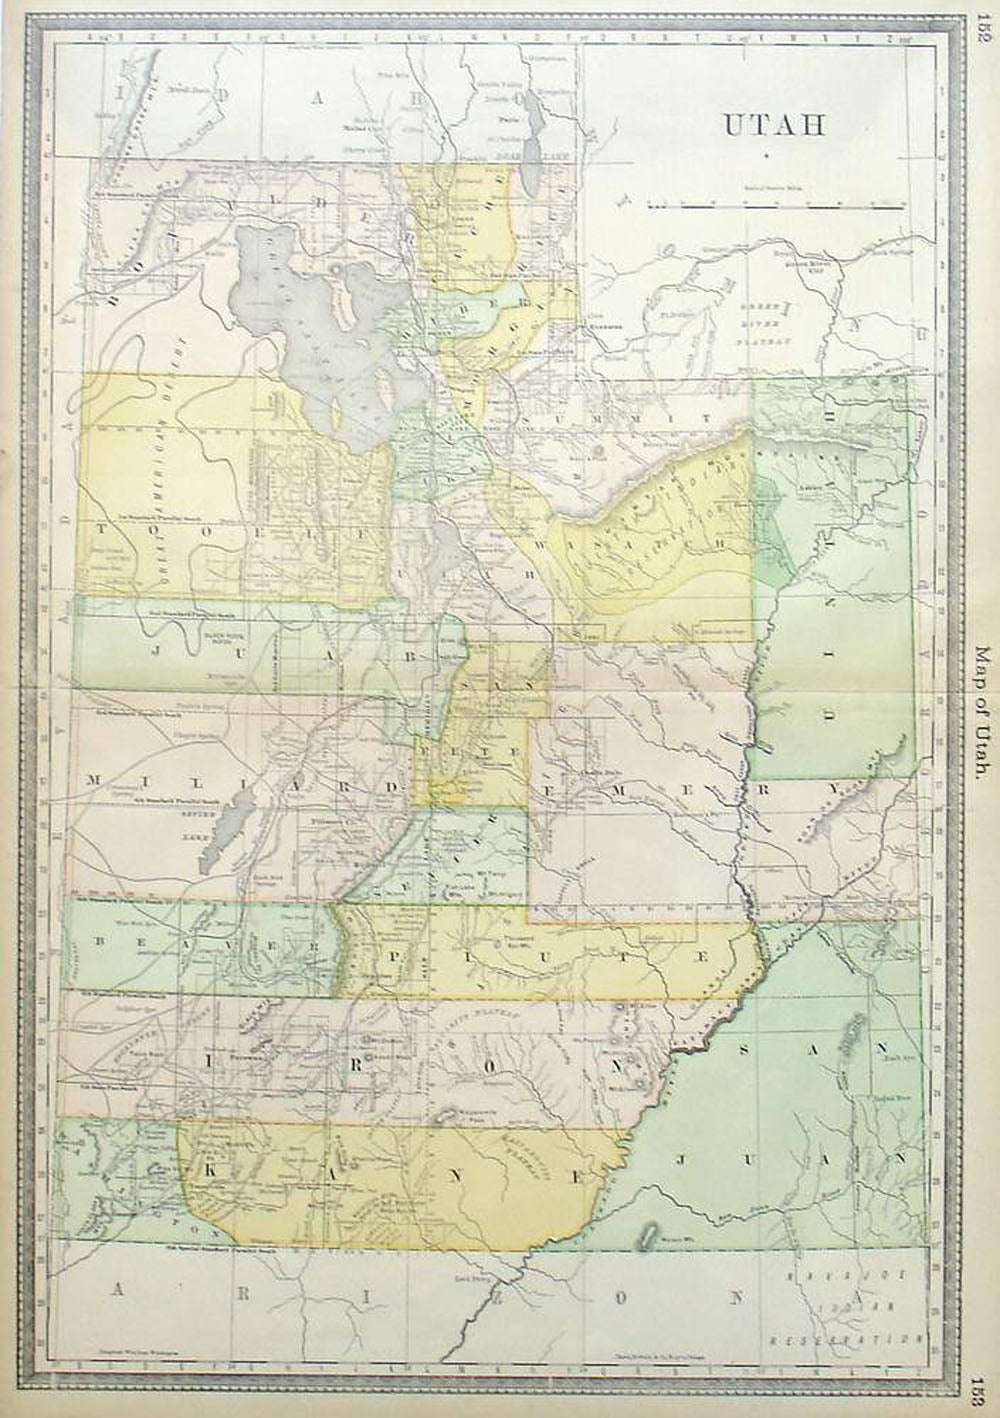 (Utah) Map of Utah